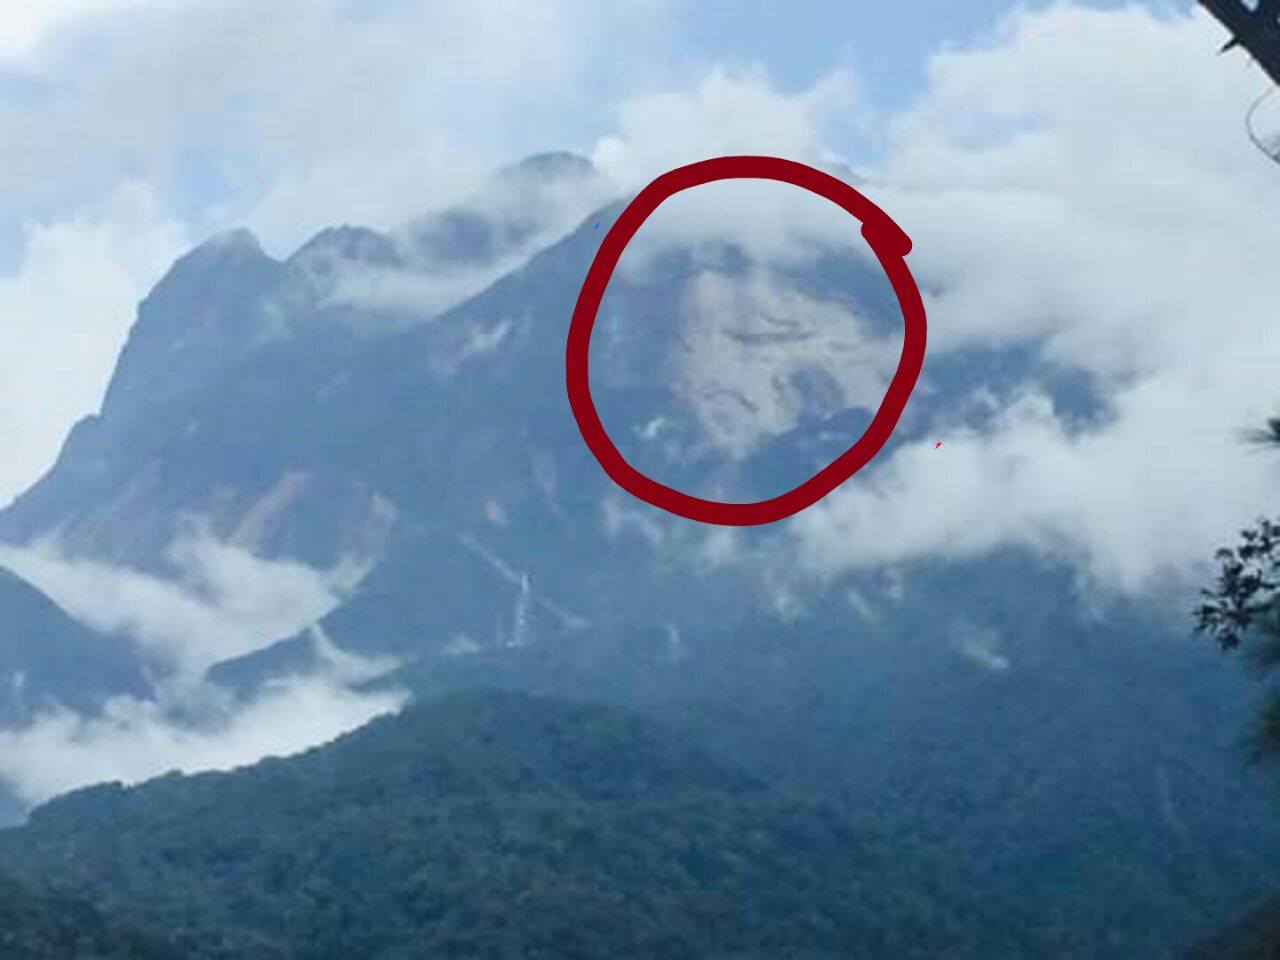 Inilah 5 Gunung Terseram Di Indonesia - Info Gunung